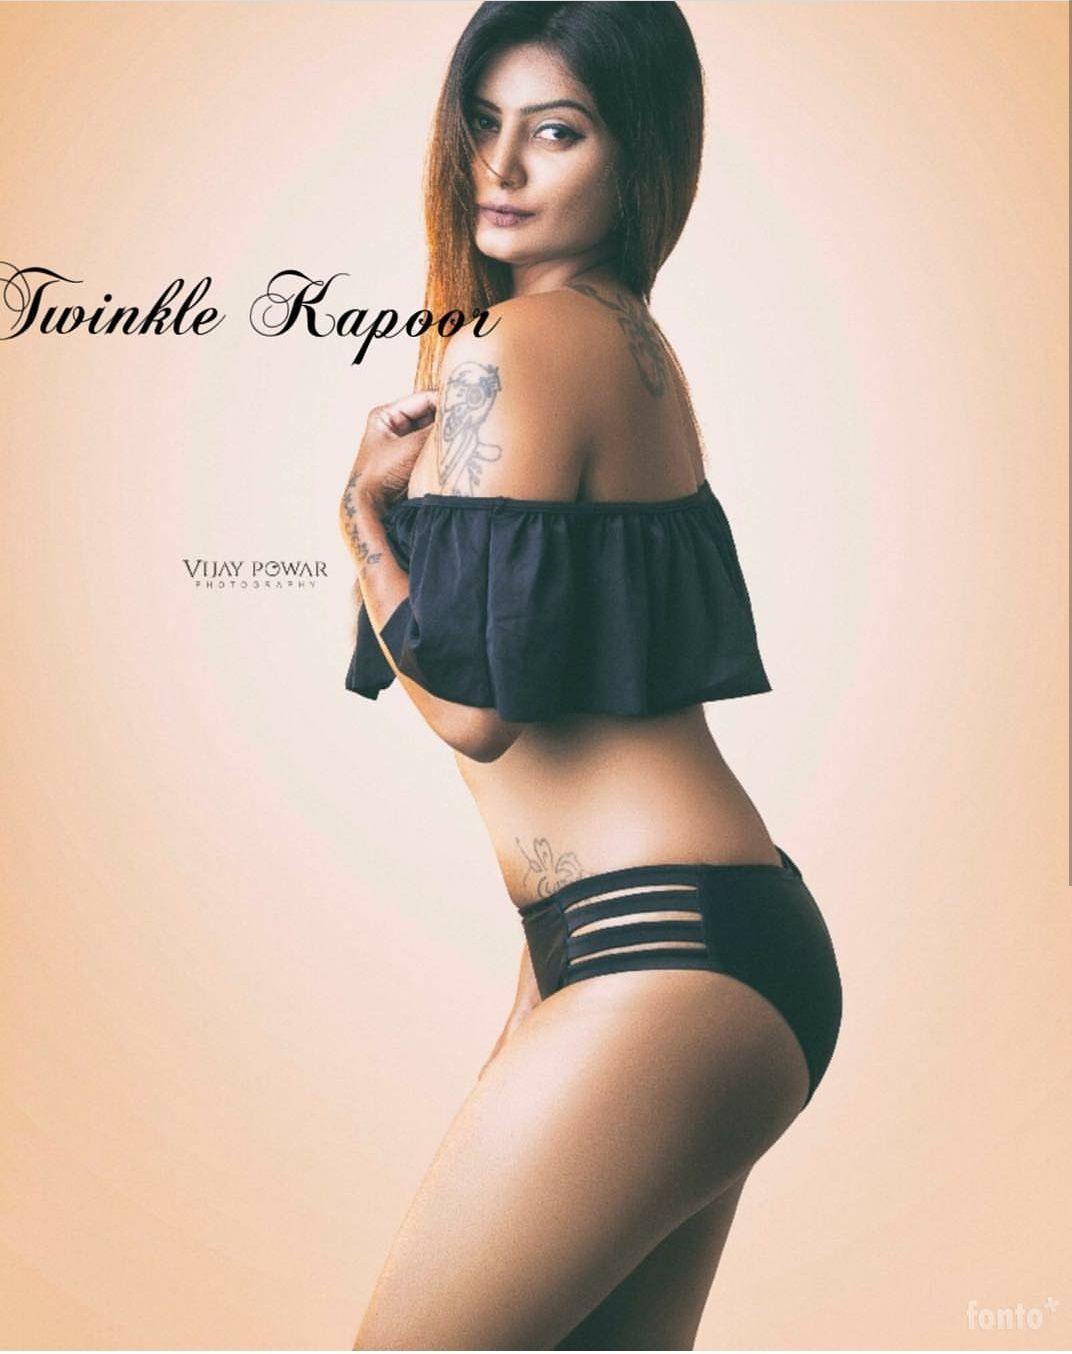 Hot Clicks: Super Hot Indian Model Twinkle Kapoor